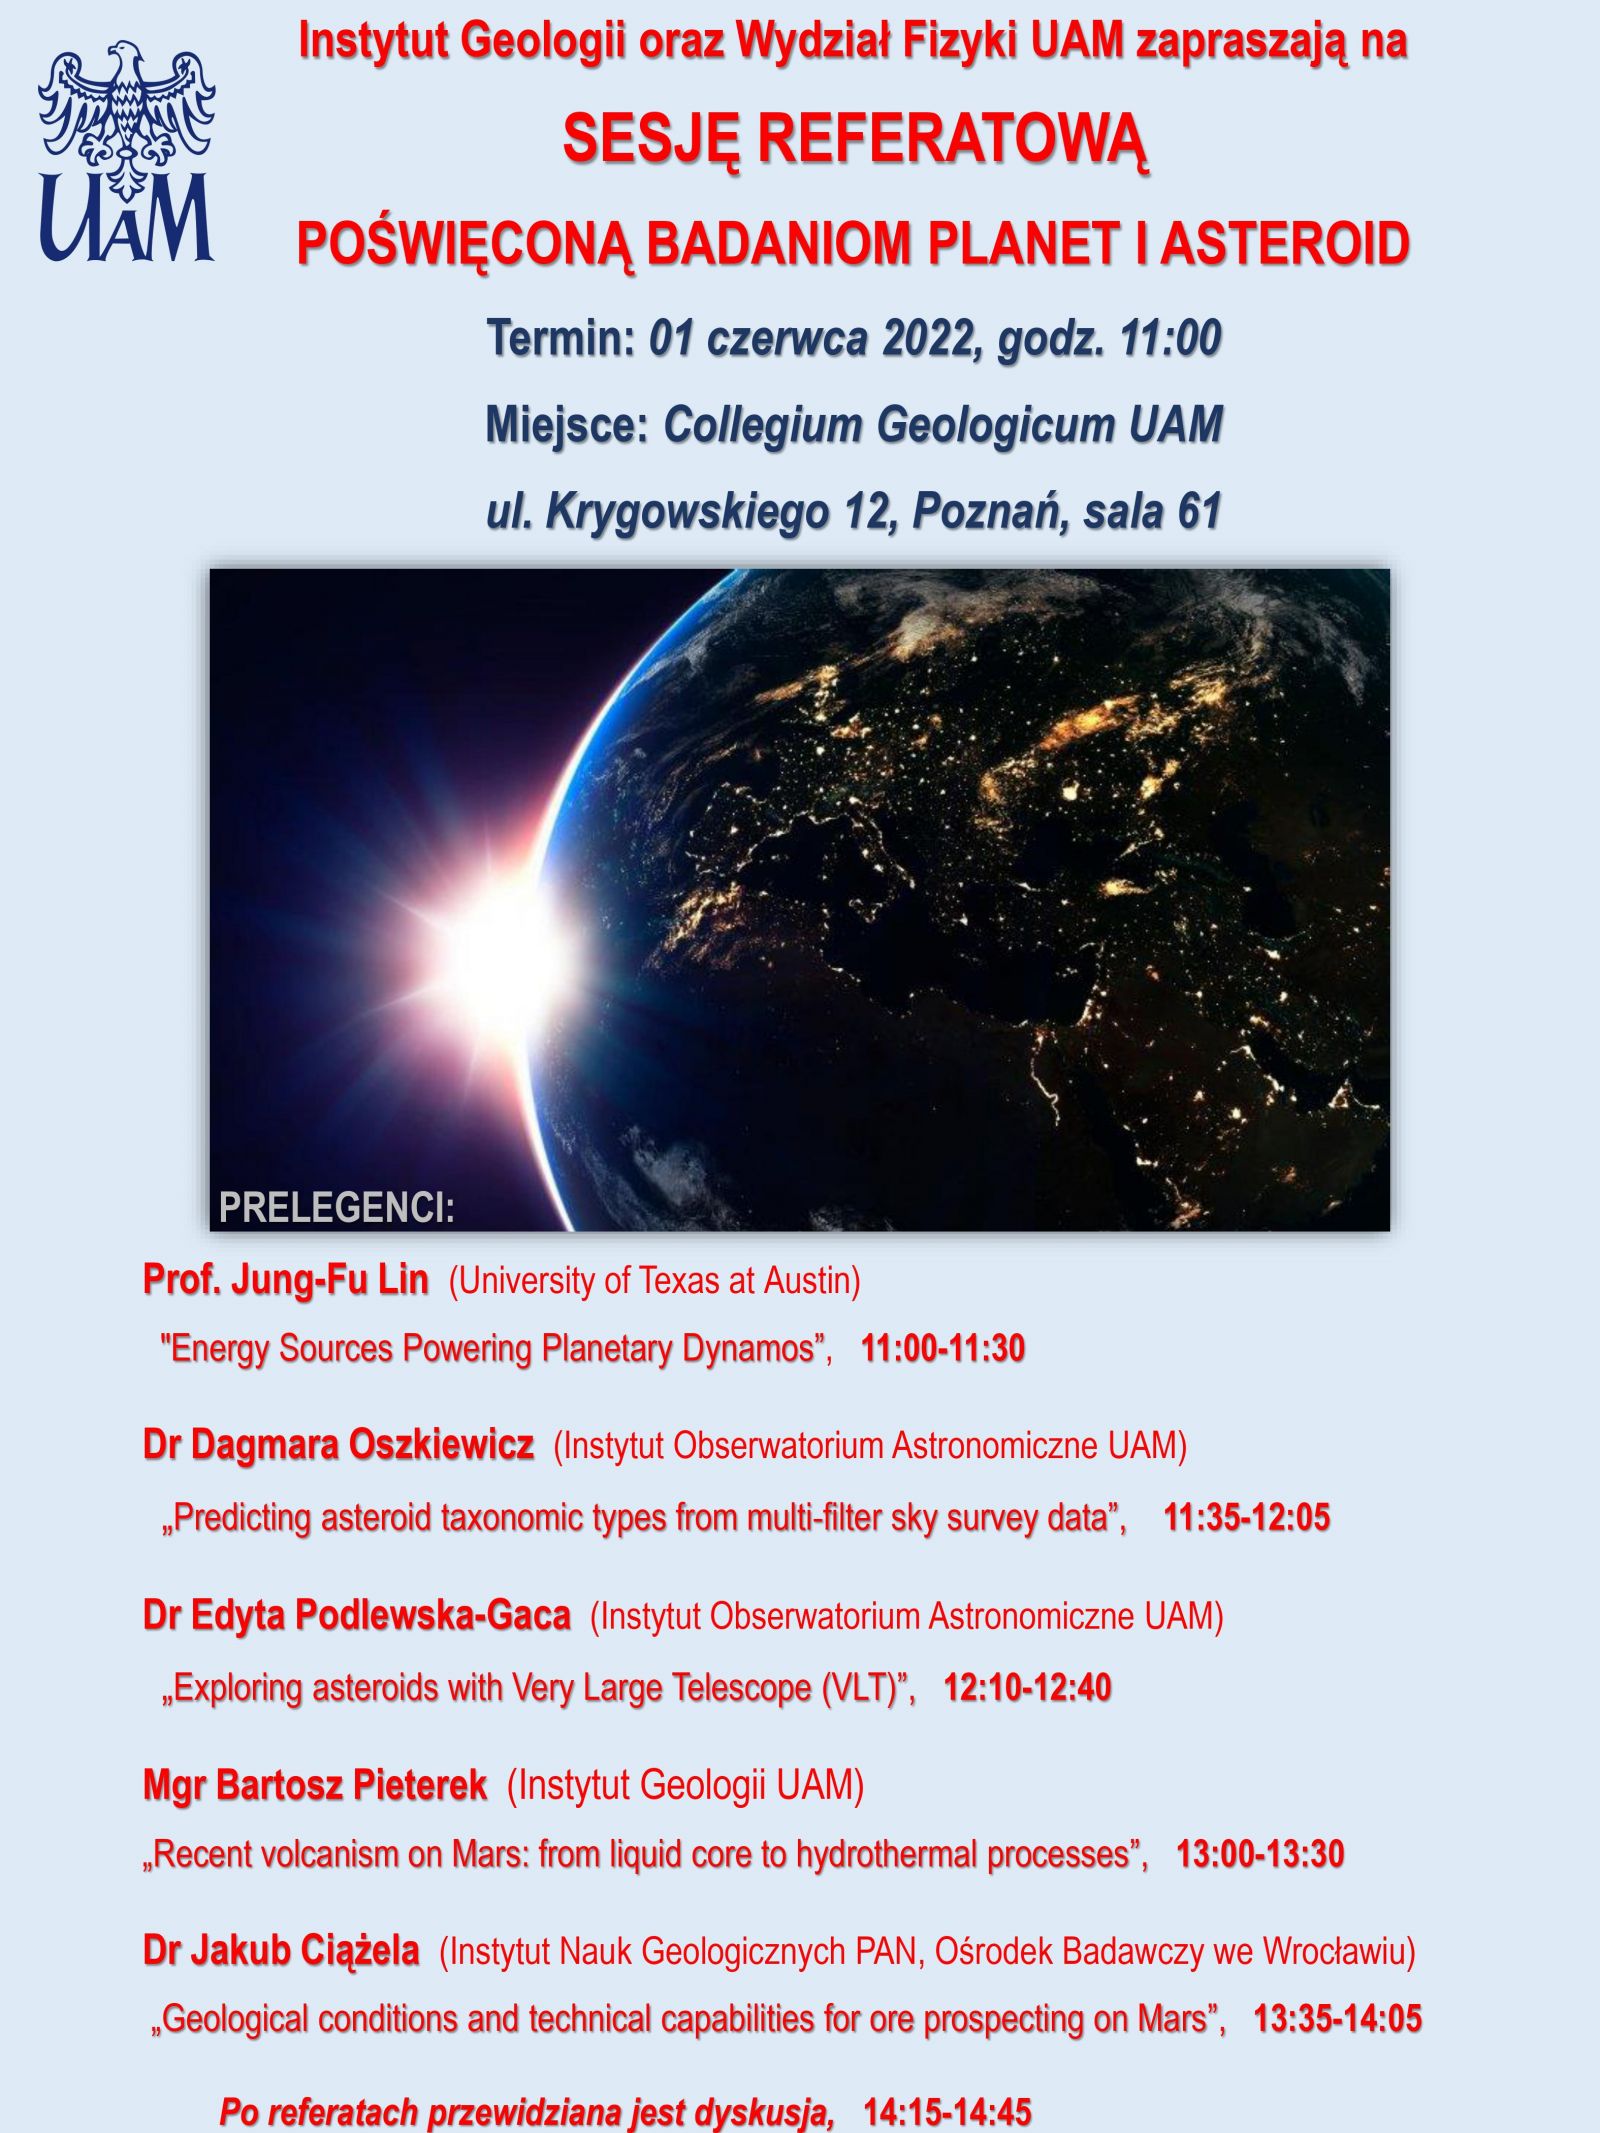 Plakat informacyjny o sesji referatowej poświęconej planetom i aseroidom